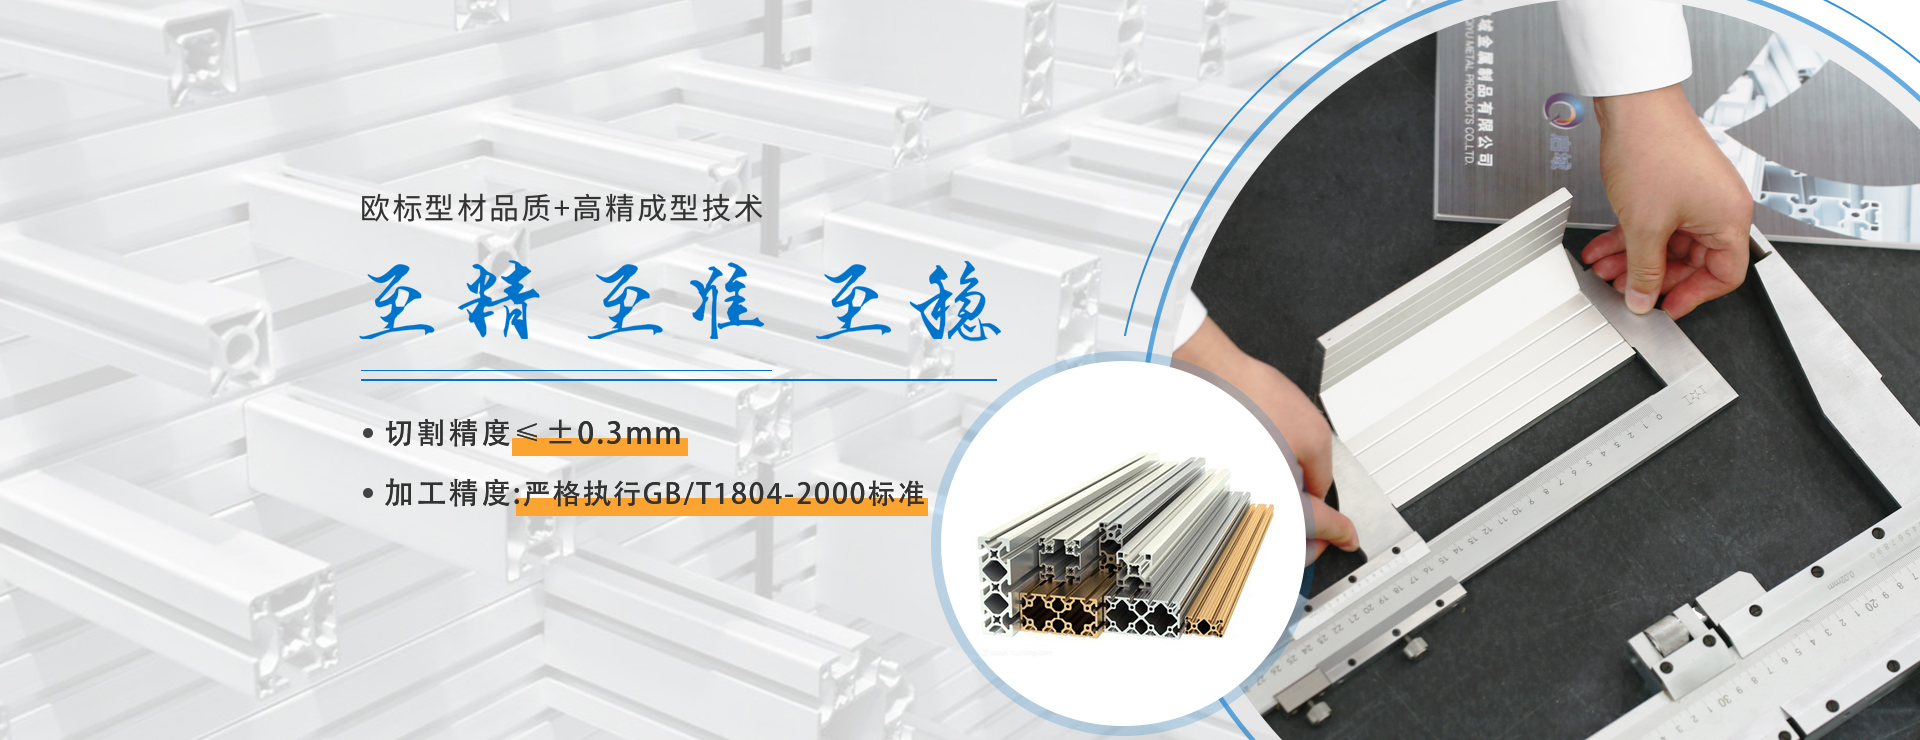 歐標(biao)鋁型材品質切割(ge)精度可達0.3mm